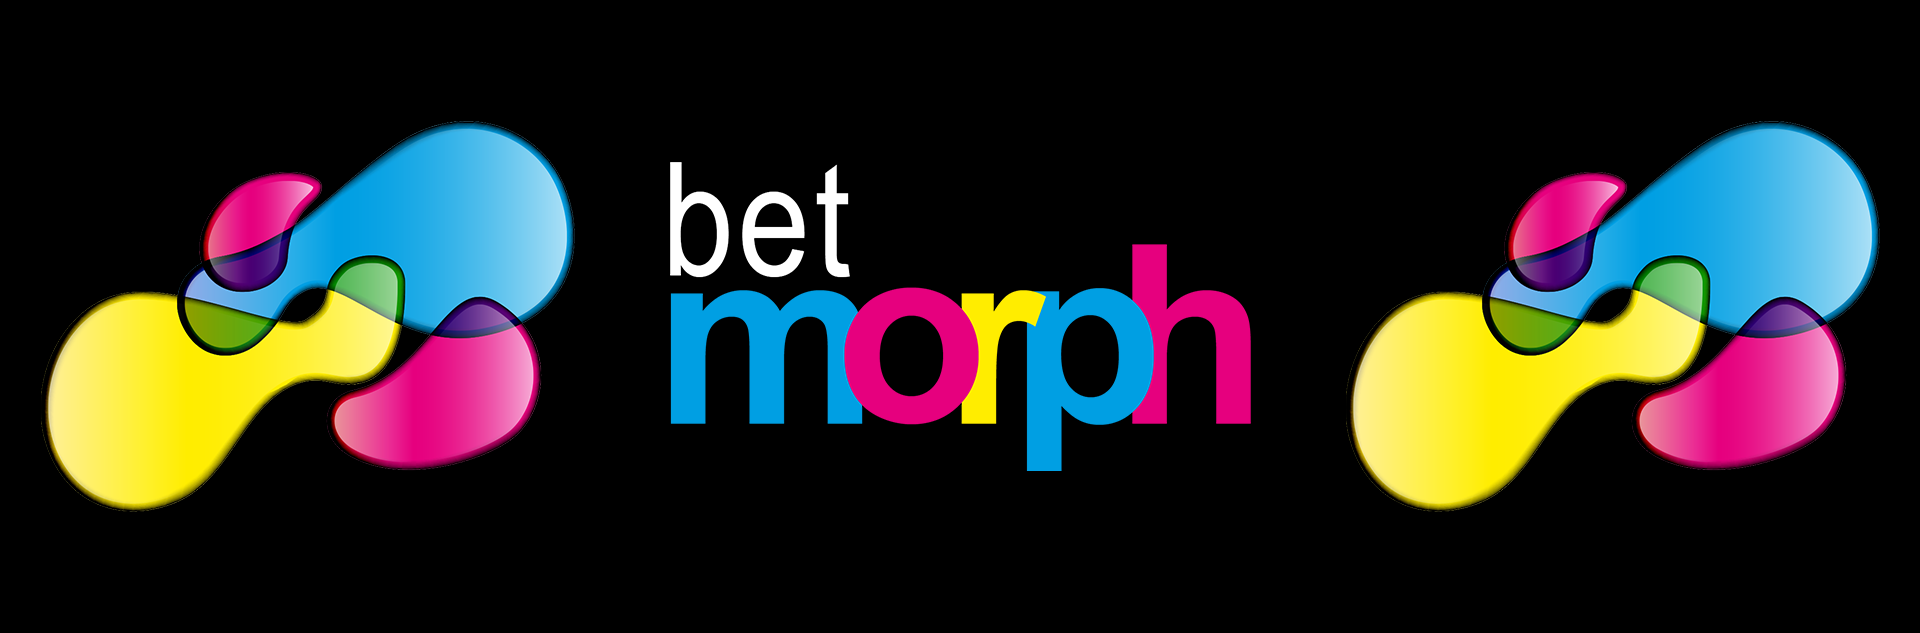 Introducing BetMorph sportsbook 